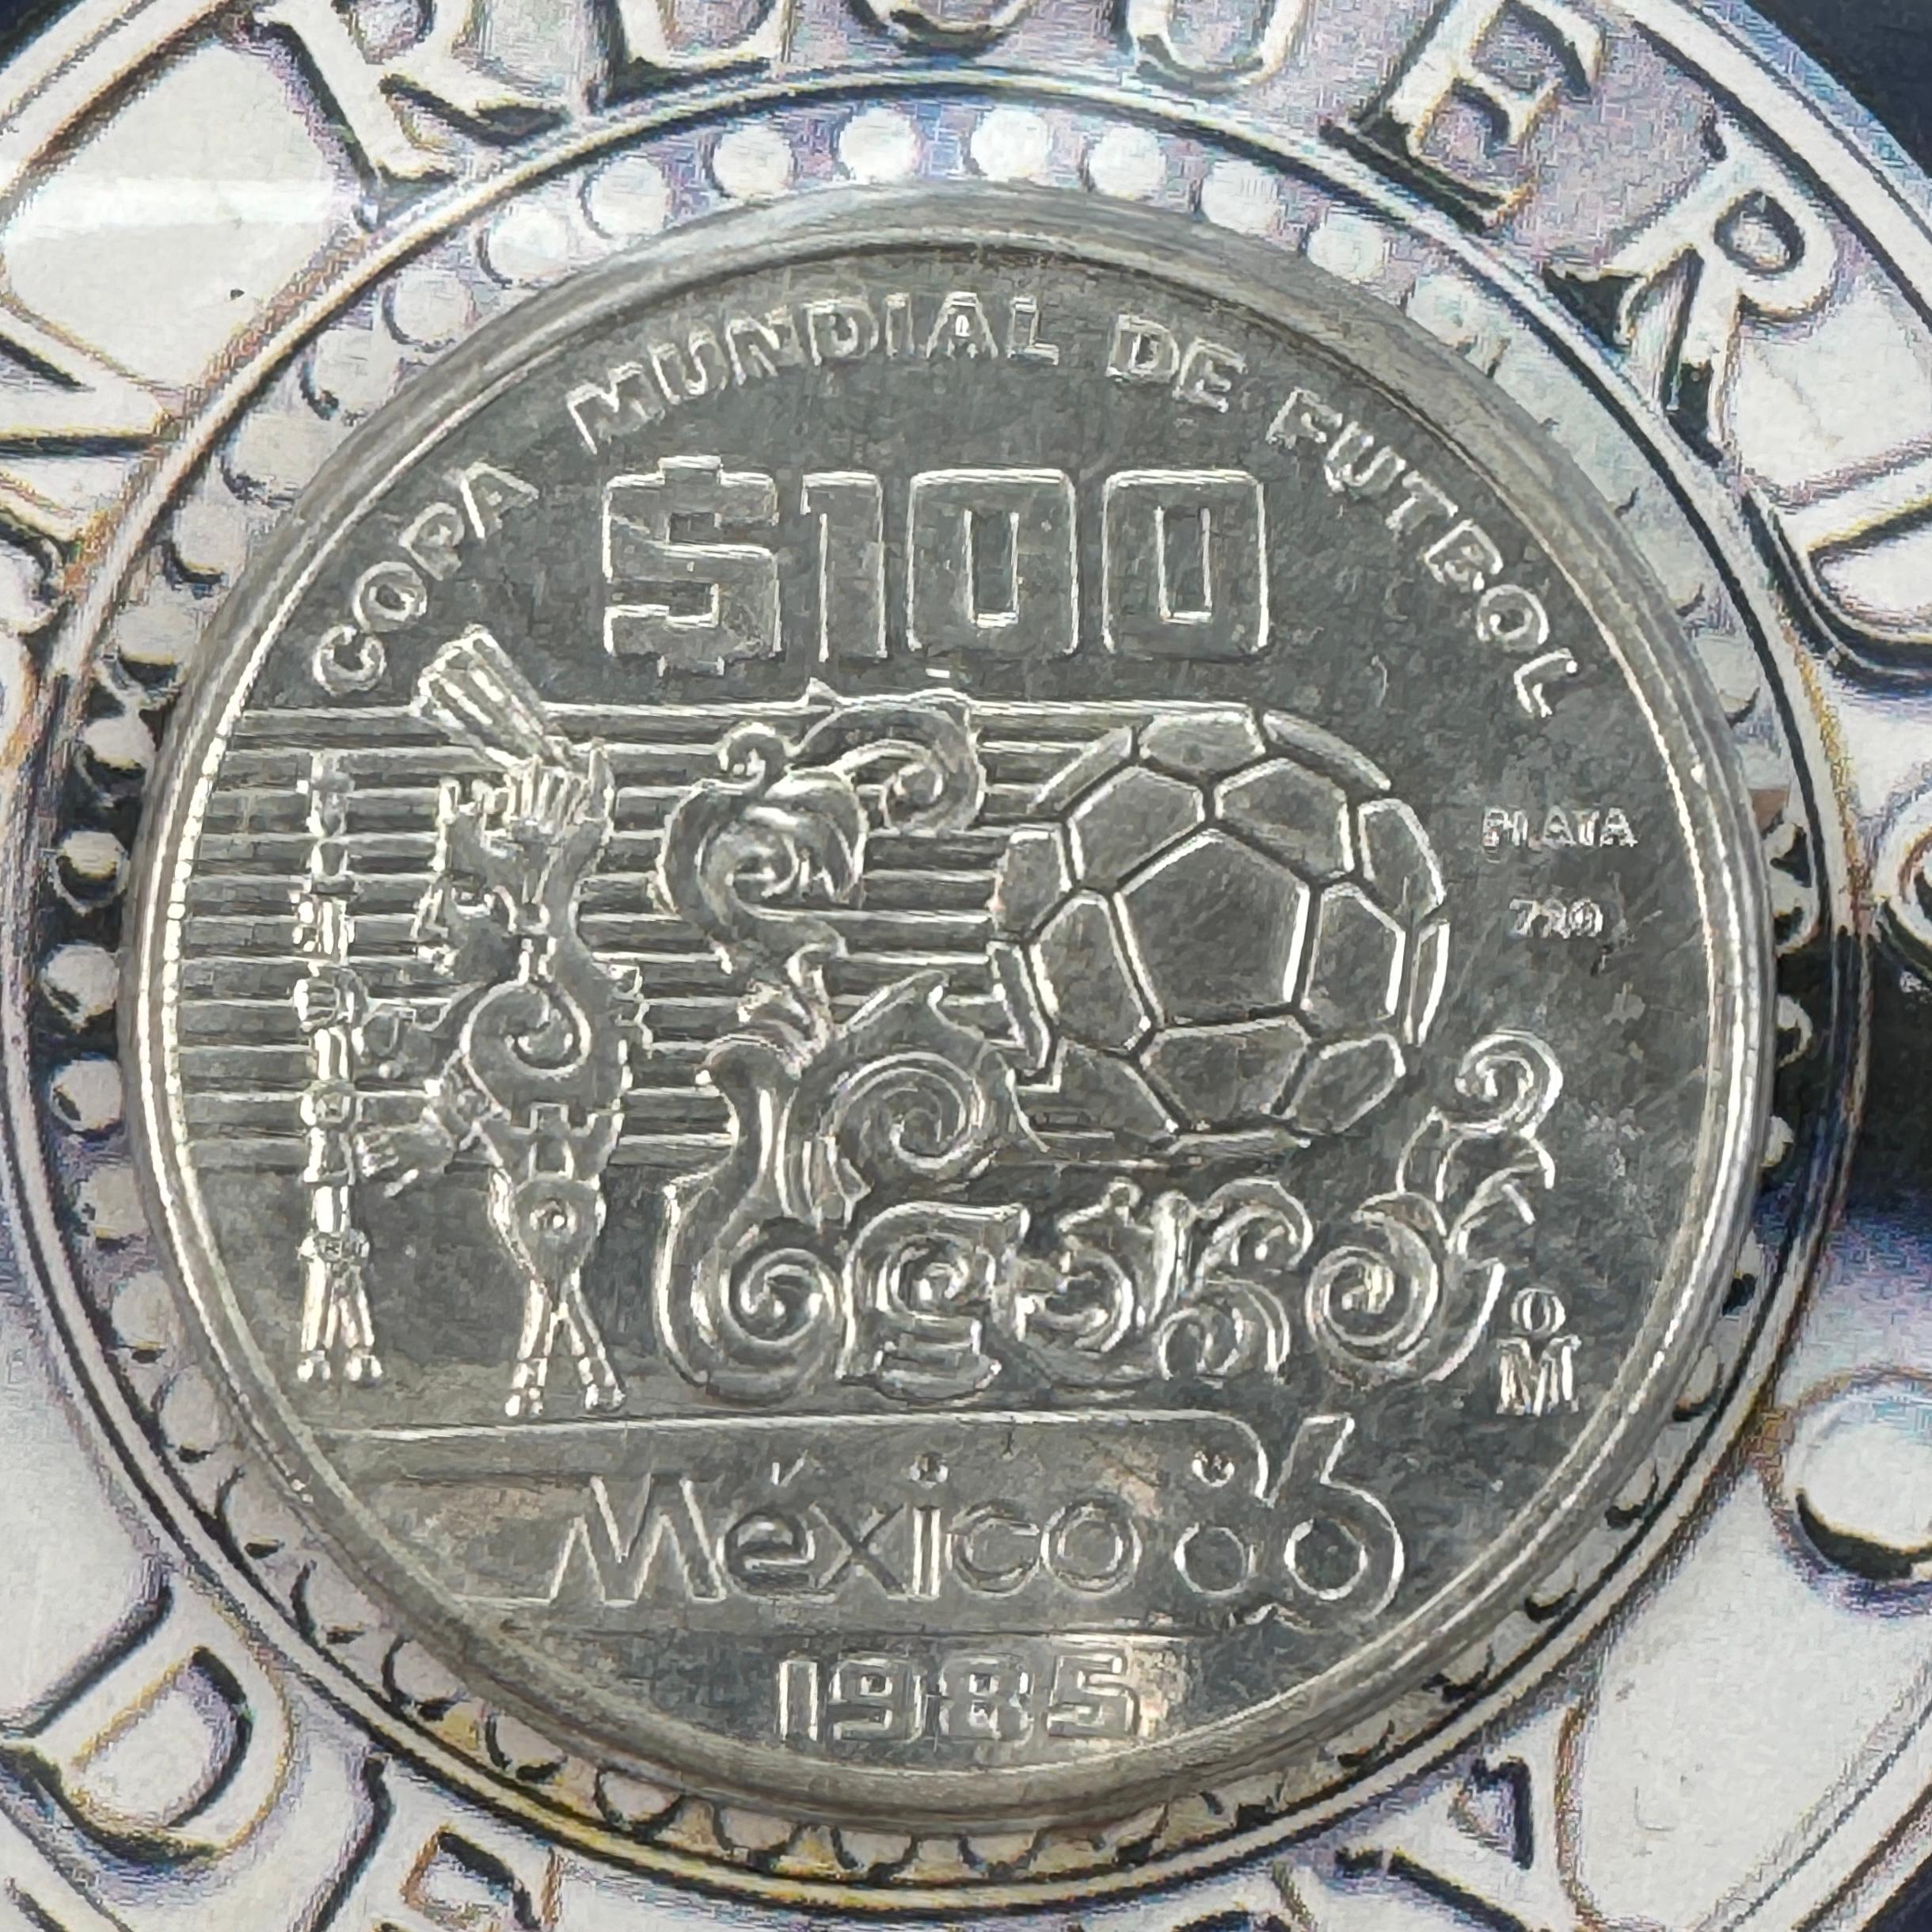 1985 Tesoros del Mundial 5-piece Mexico gold & silver soccer commemorative coin set